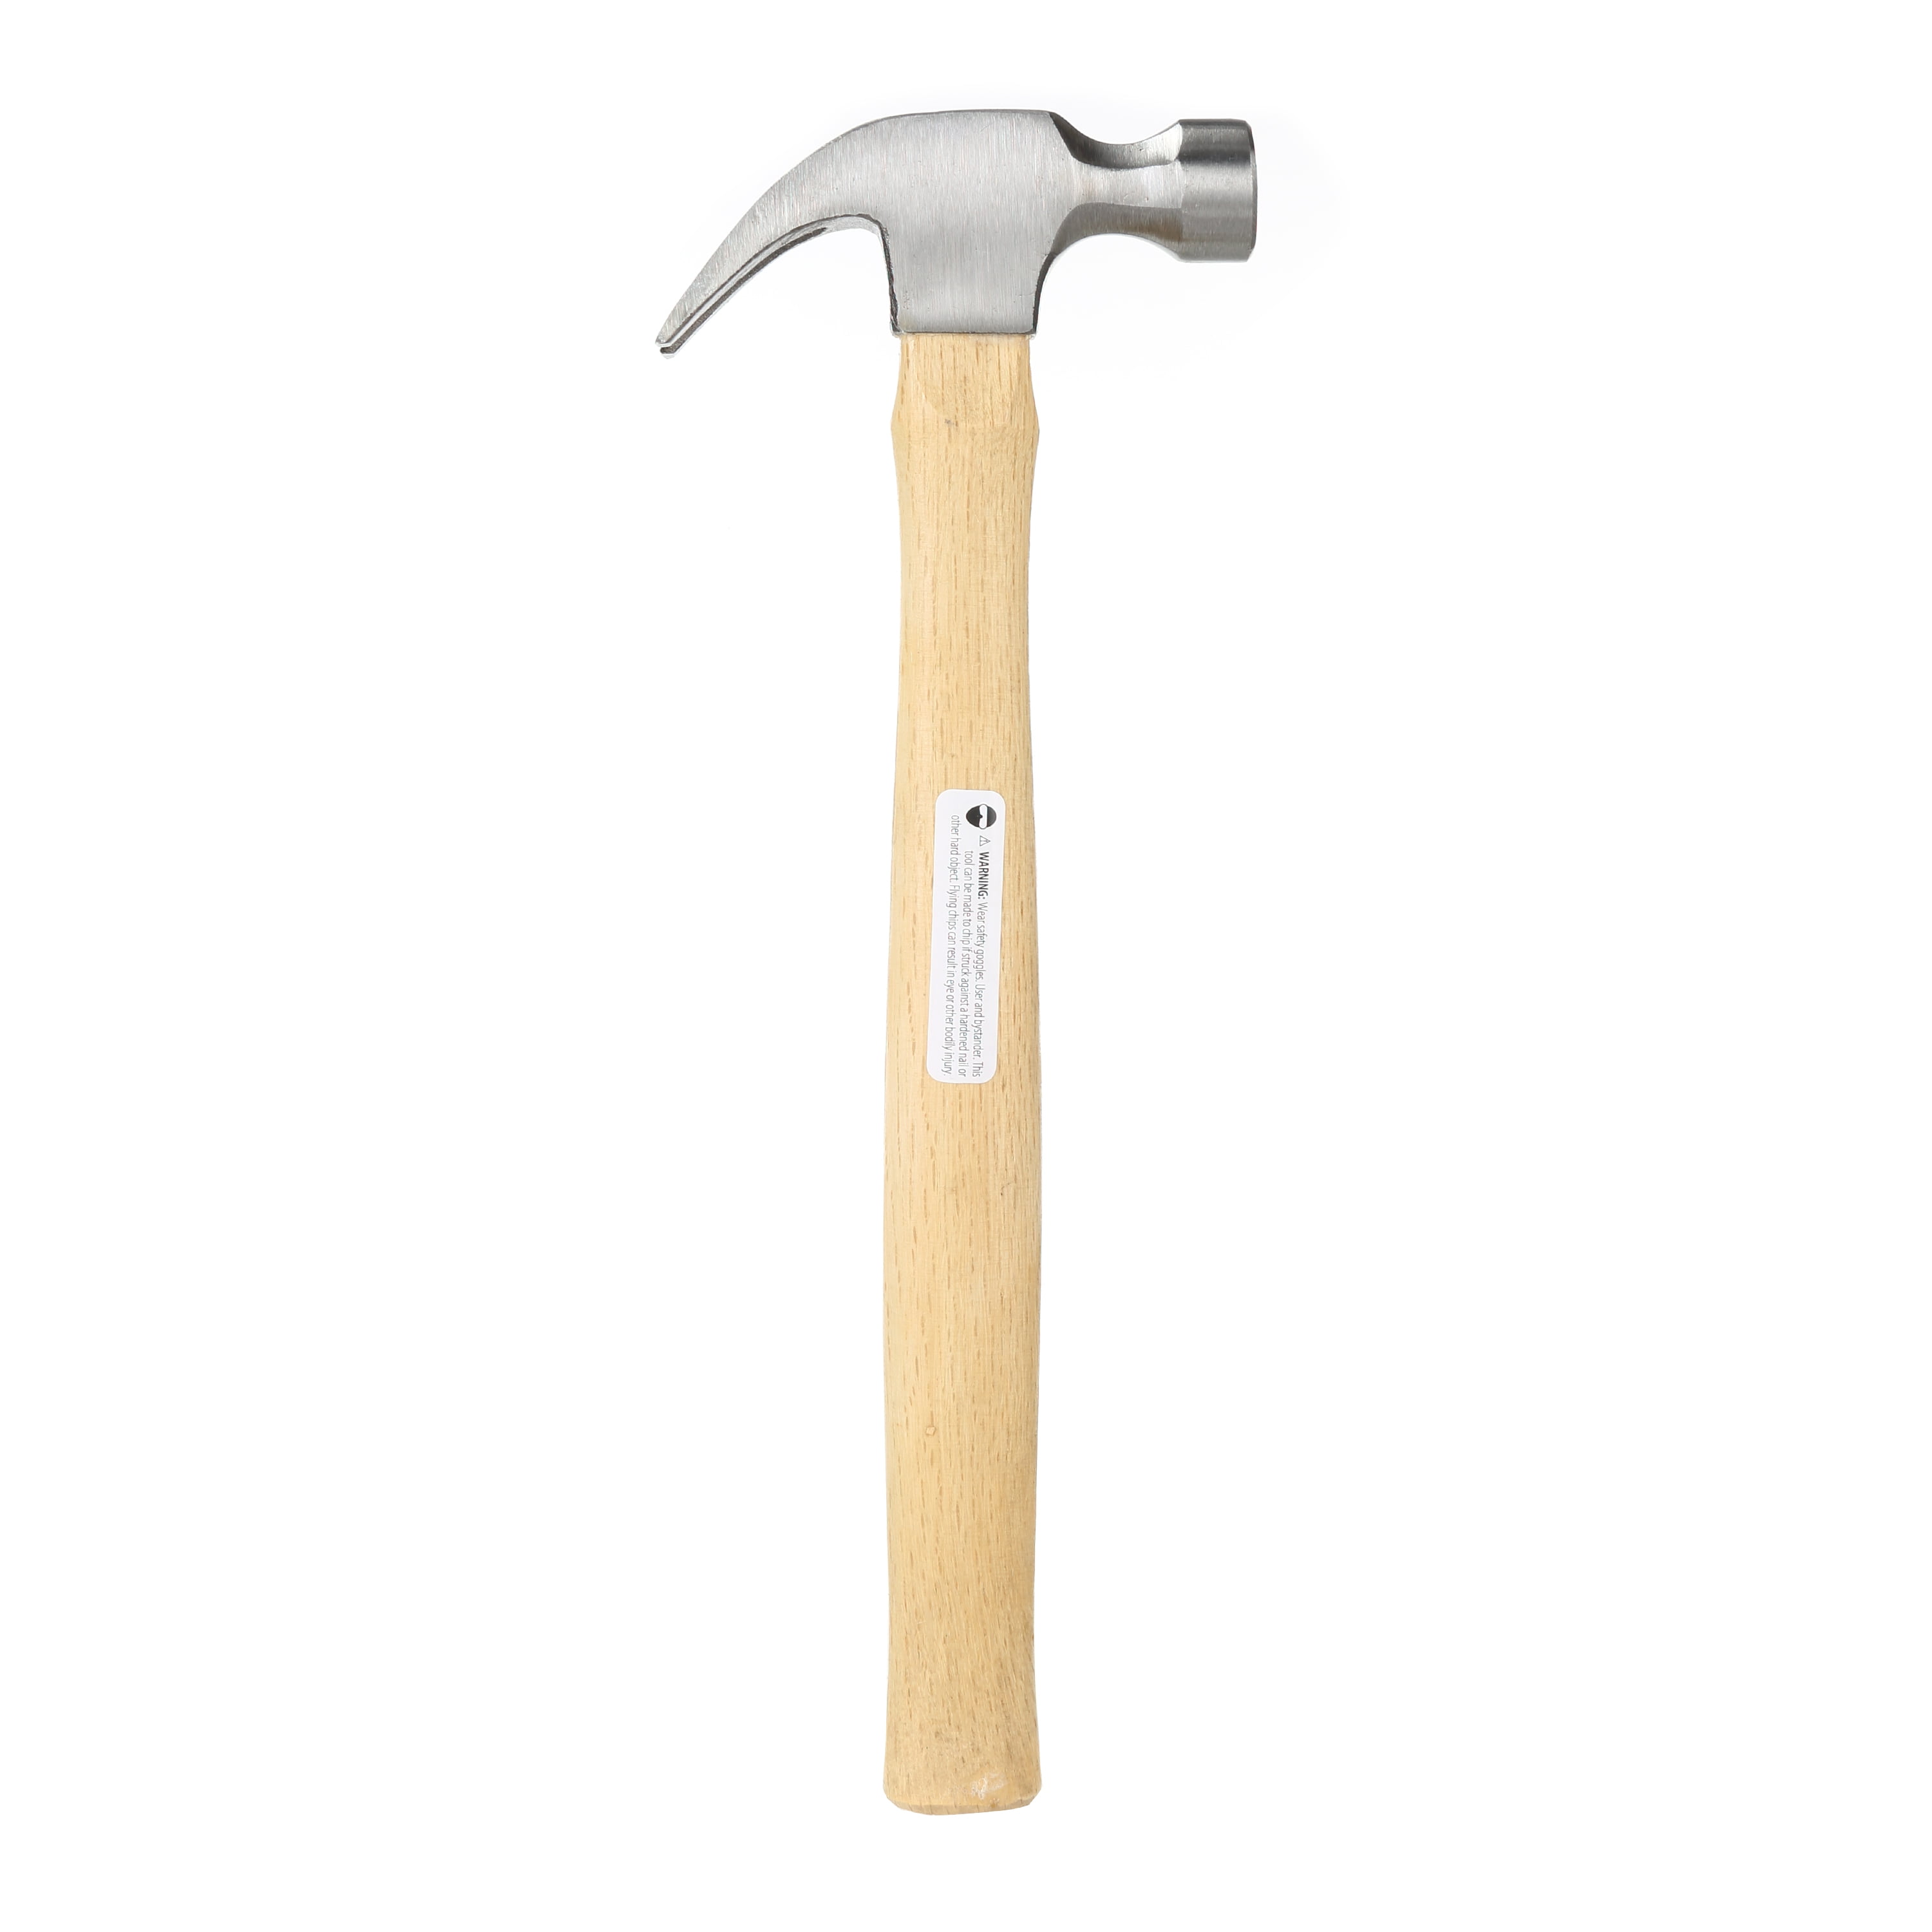 Hyper Tough 7oz Claw Hammer